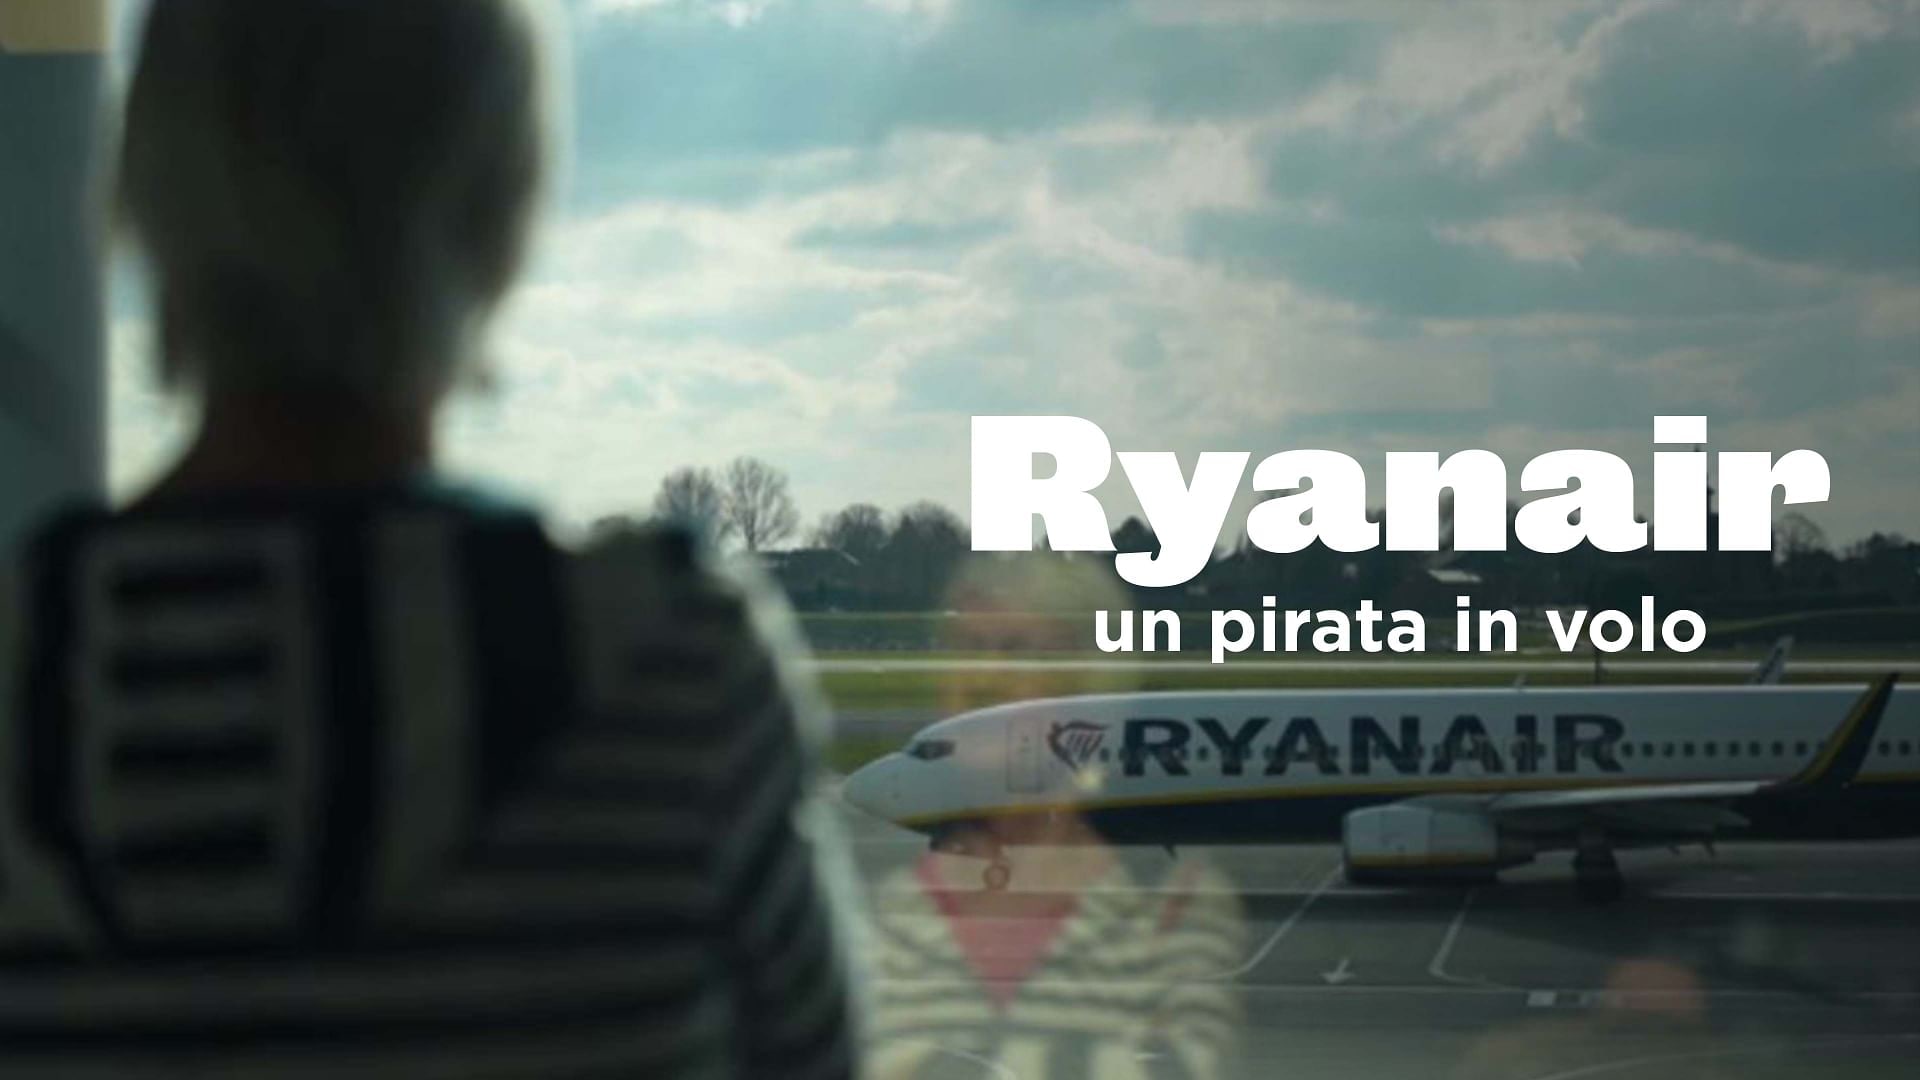 Ryanair: un pirata in volo